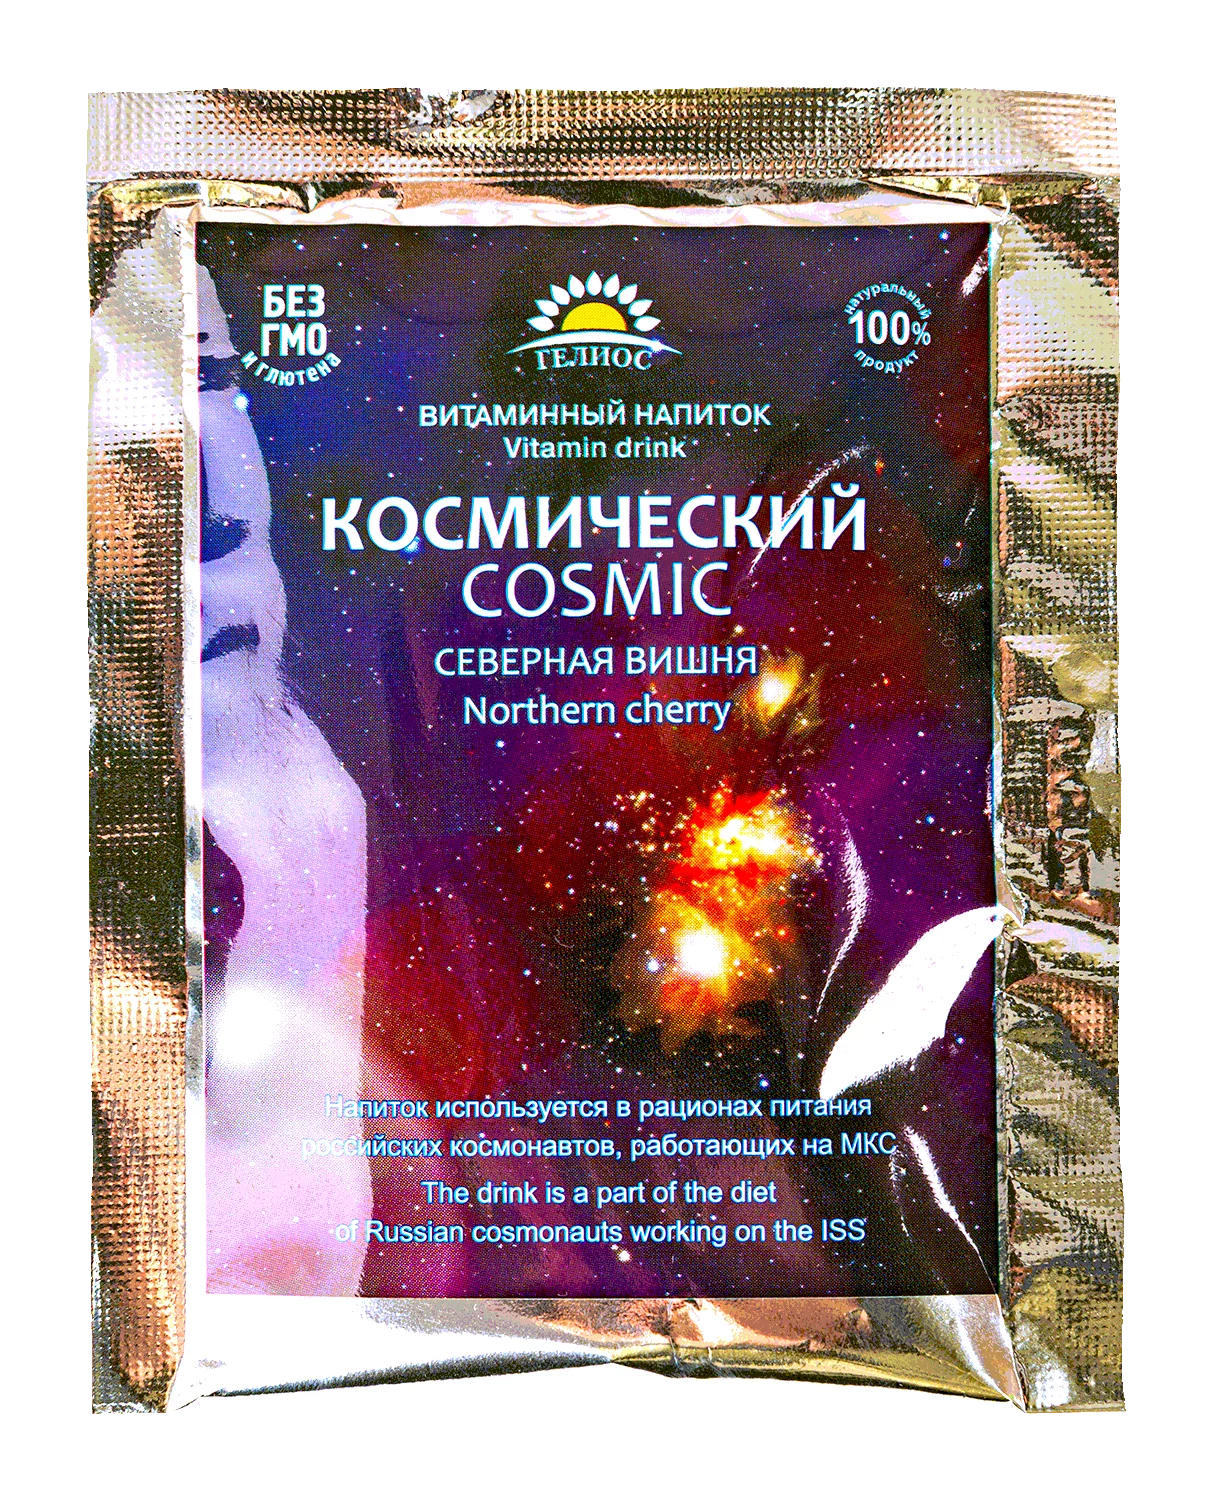 Витаминный напиток Северная Вишня Cosmic